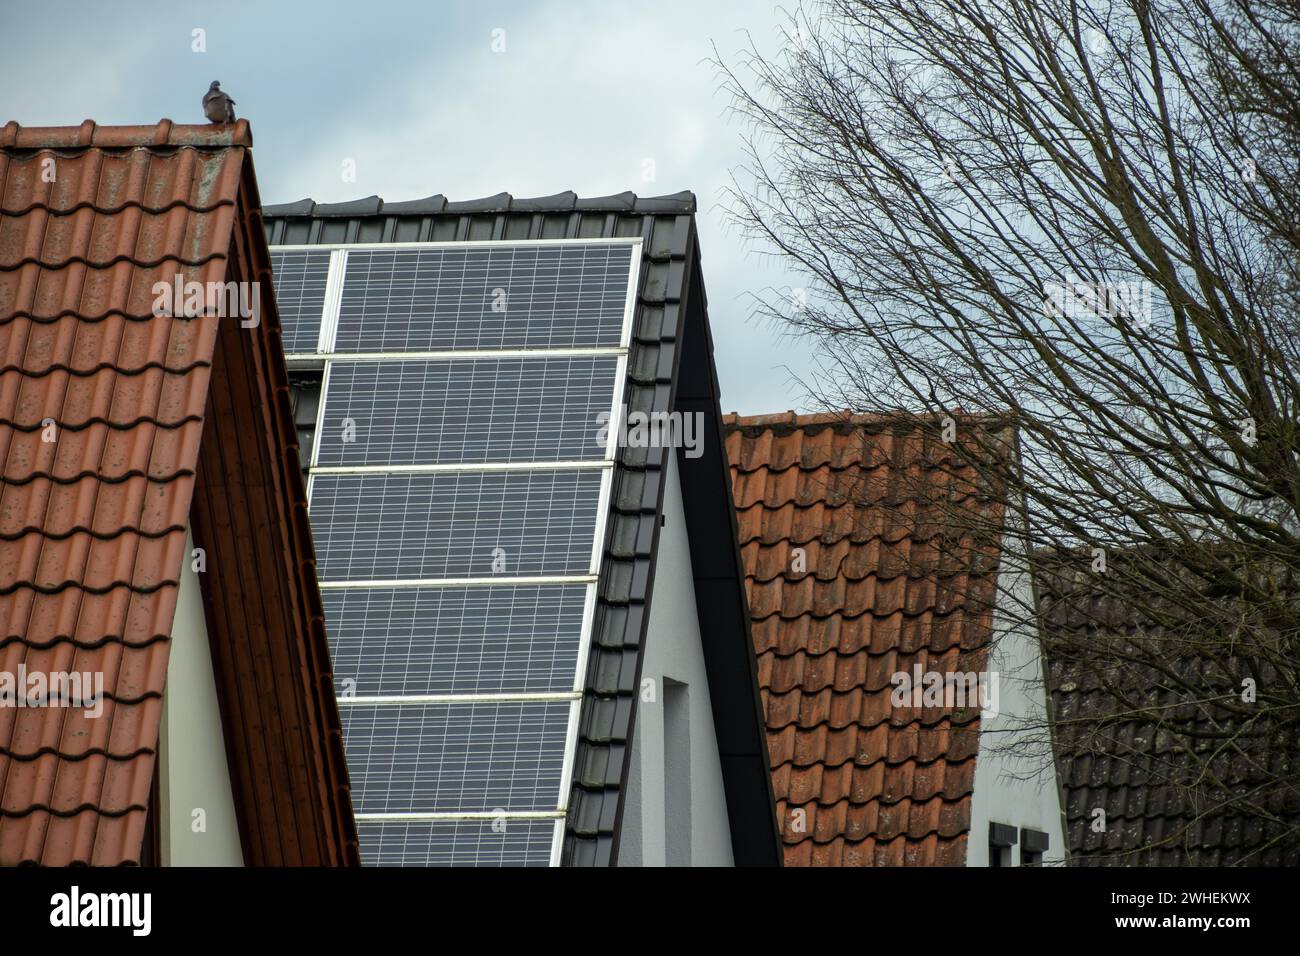 Apartamentos con energia solar fotografías e imágenes de alta resolución -  Página 3 - Alamy